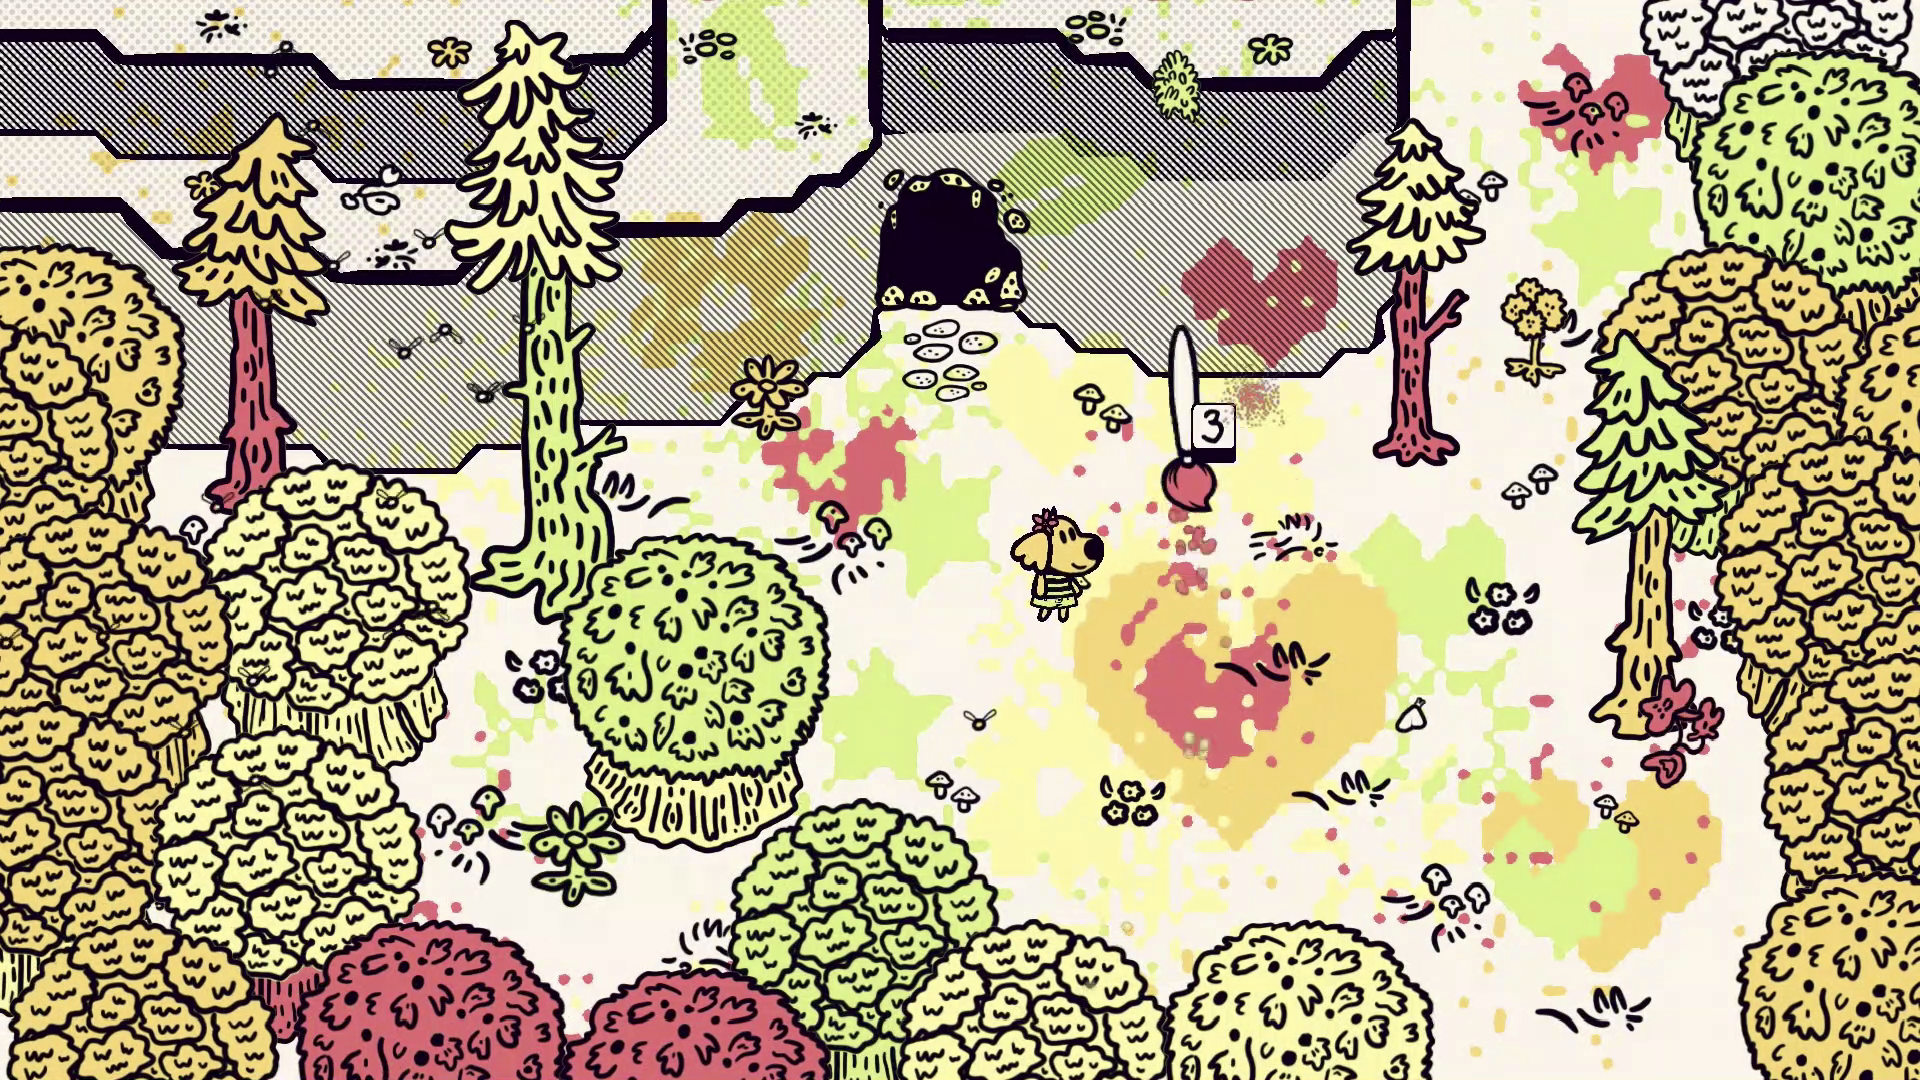 Chicory: A Colorful Tale – snímek obrazovky | PS5